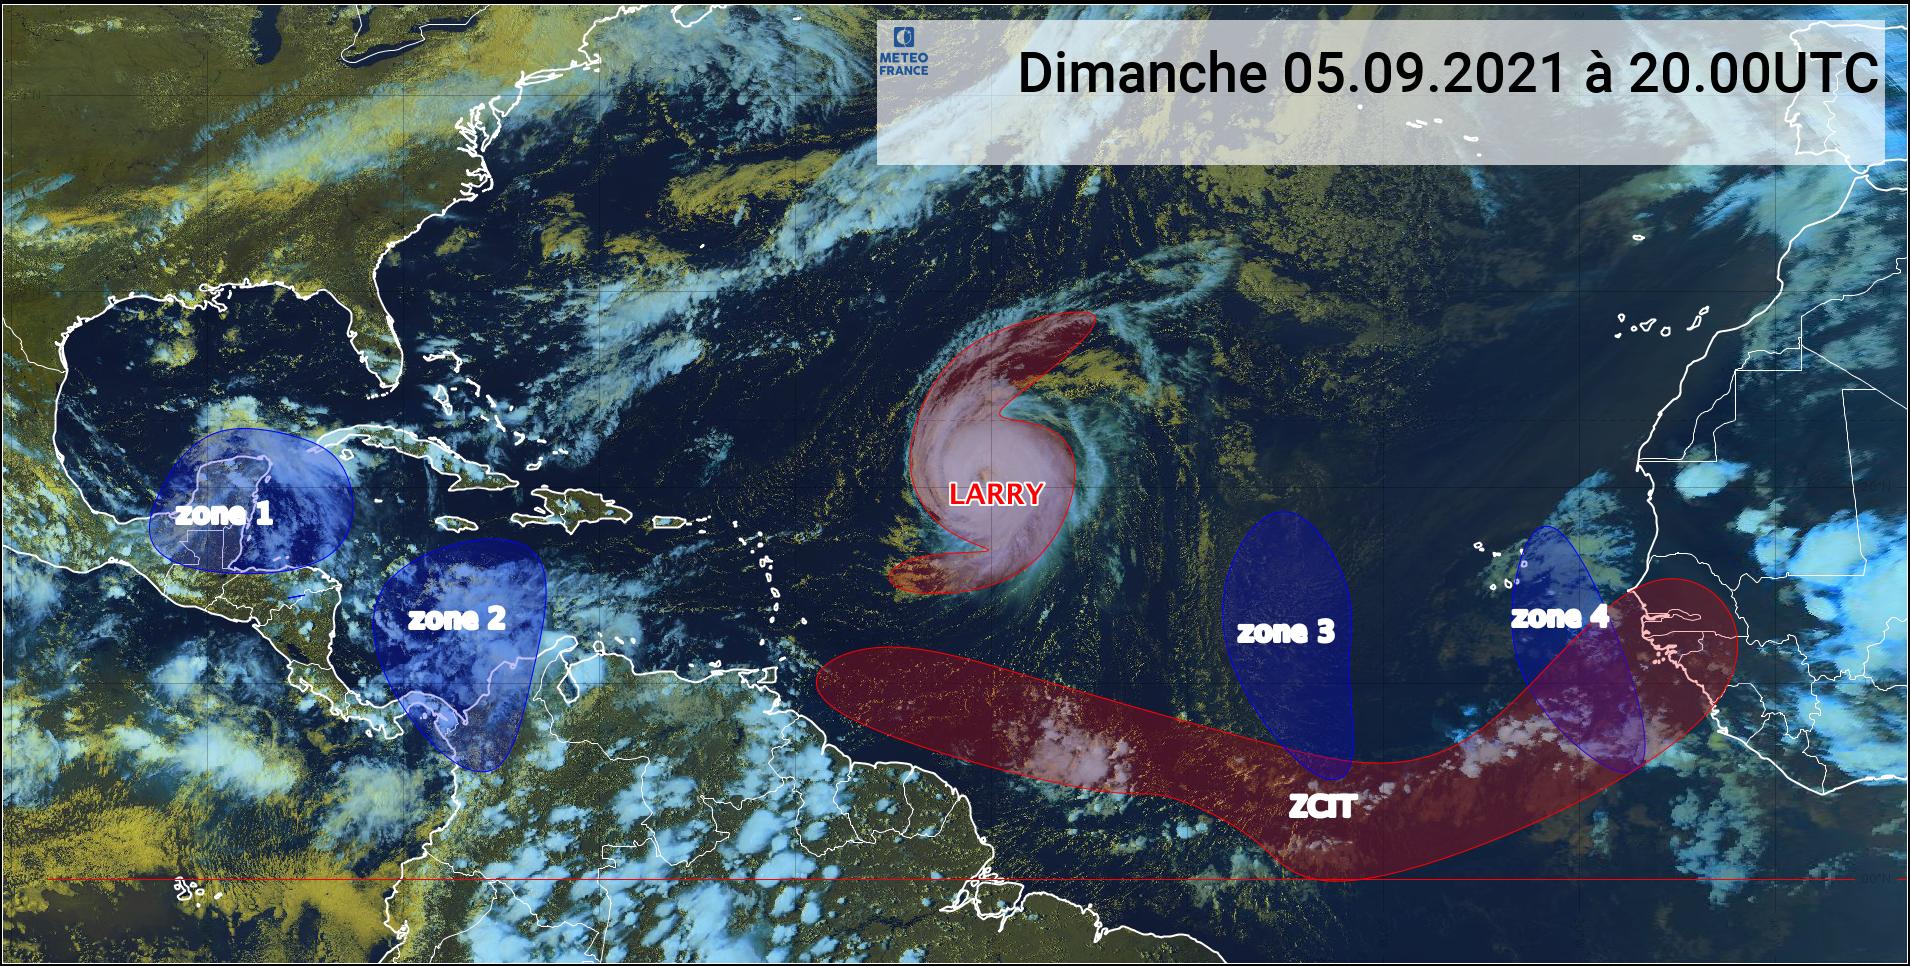     De la houle attendue lundi sur les côtes des Antilles françaises au passage de Larry (bulletin du 05/09/21) 

